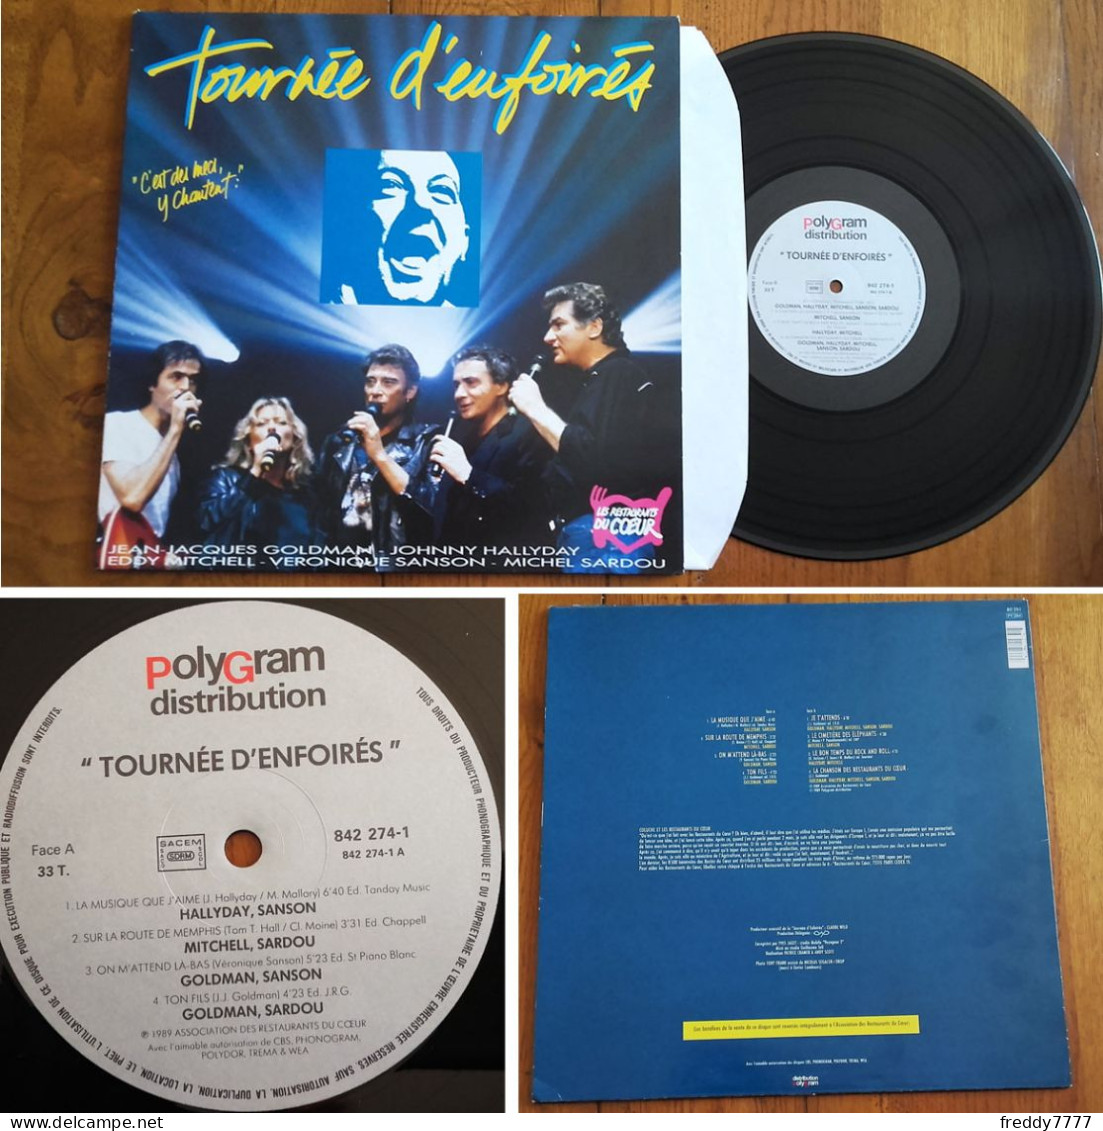 RARE French LP 33t RPM (12") TOURNEE D'ENFOIRES «C'est Des Mecs Y Chantent !» (Goldman, Hallyday, Eddy Mitchell... 1989) - Collectors